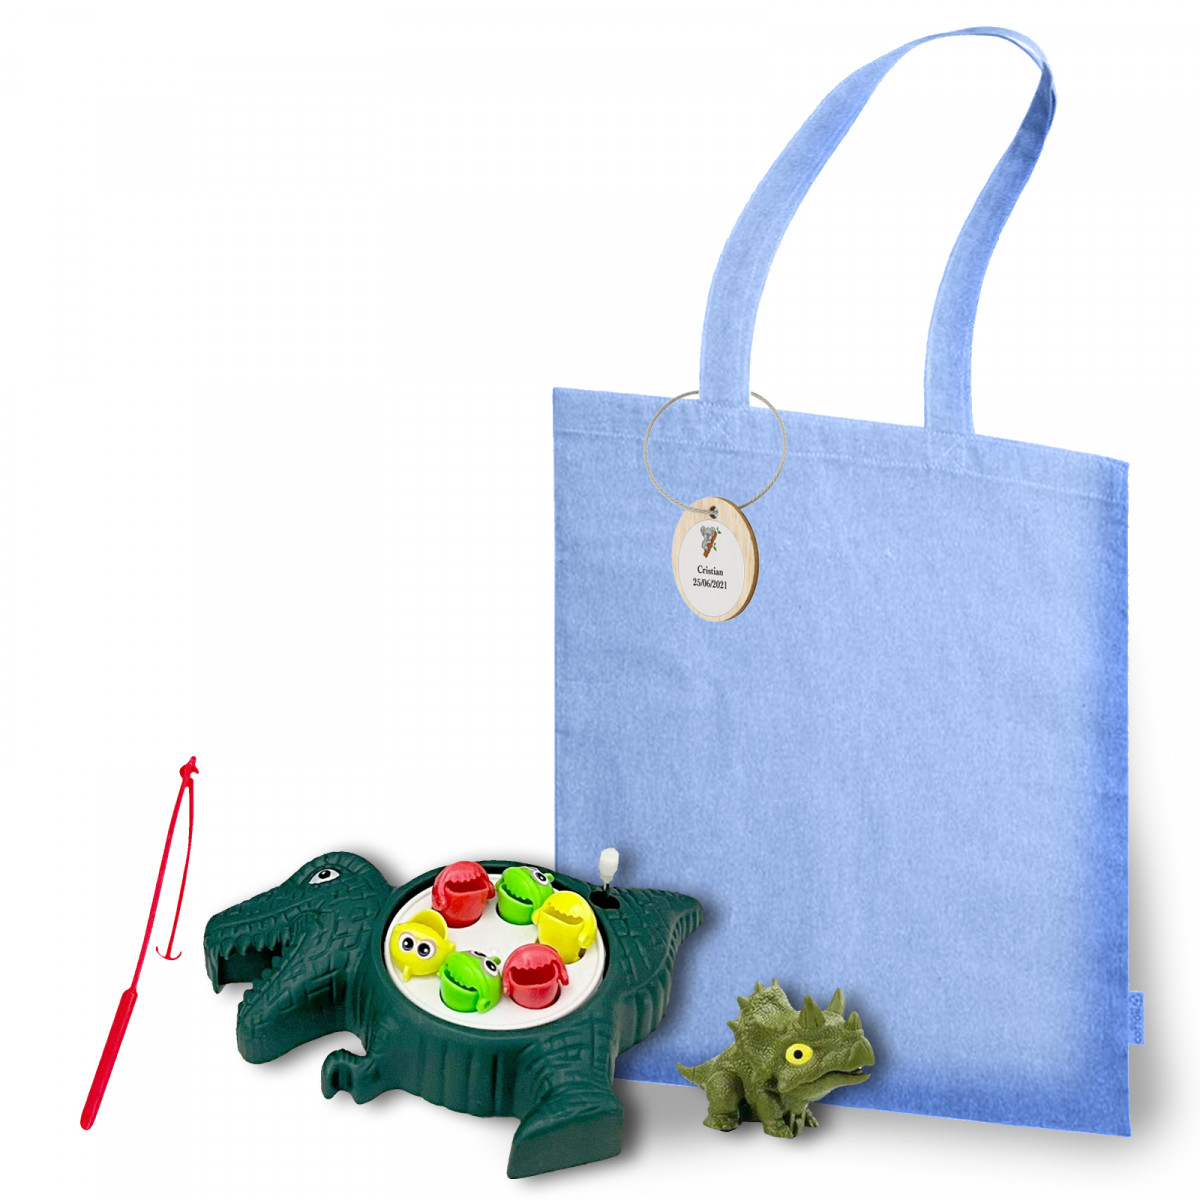 Jouets dinosaures et jeu de pêche présentés dans un sac en tissu avec autocollant personnalisable sur une étiquette en bois